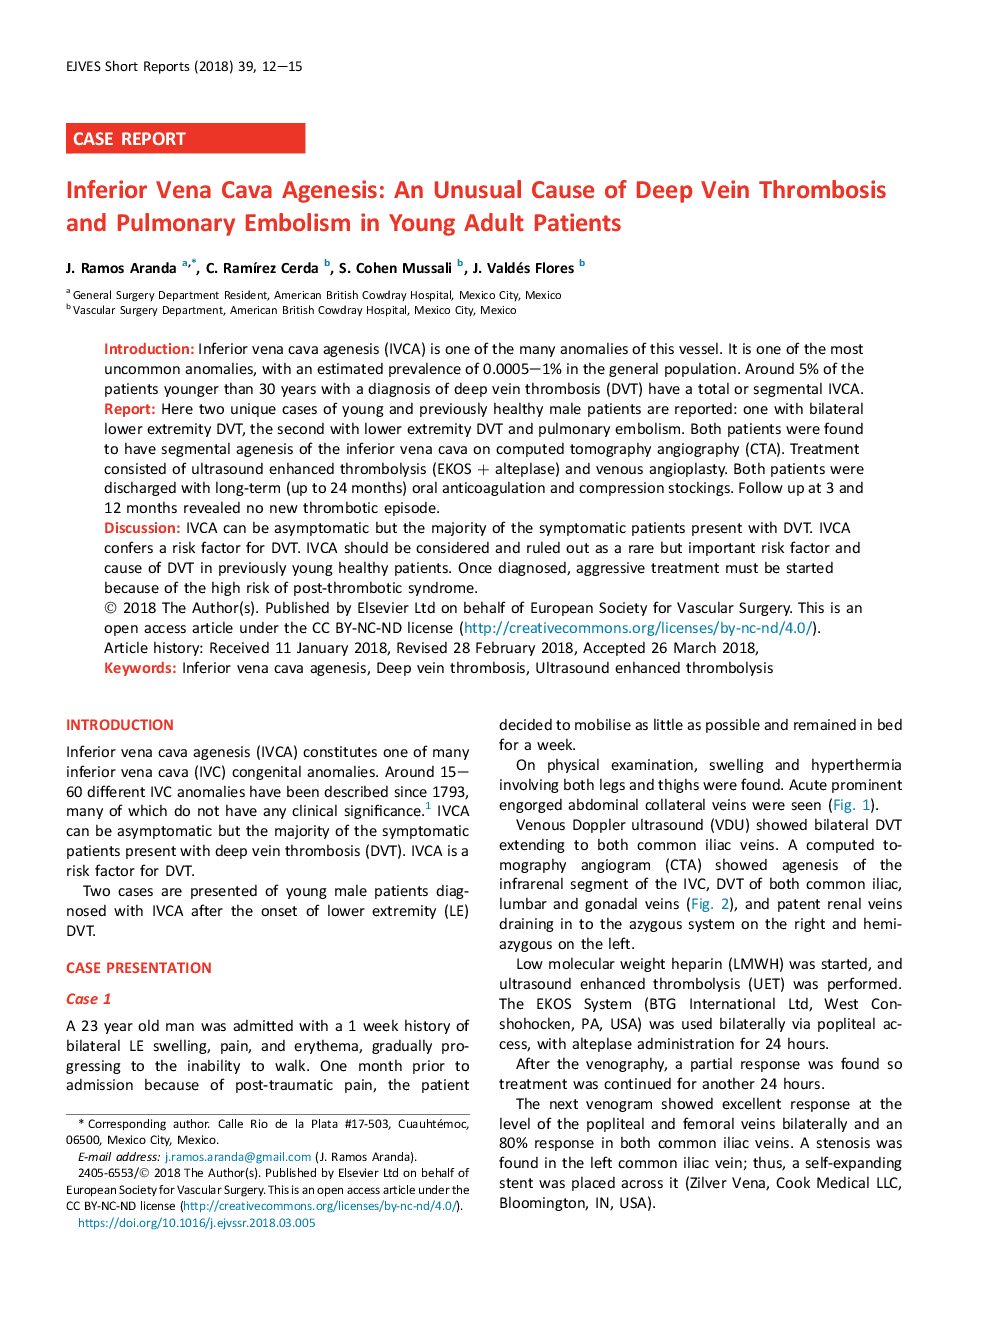 پستانداران ونوا کاوا: علت غیر معمول ترومبوز ورید عمقی و امبولیسم ریوی در بیماران جوان بزرگسال 